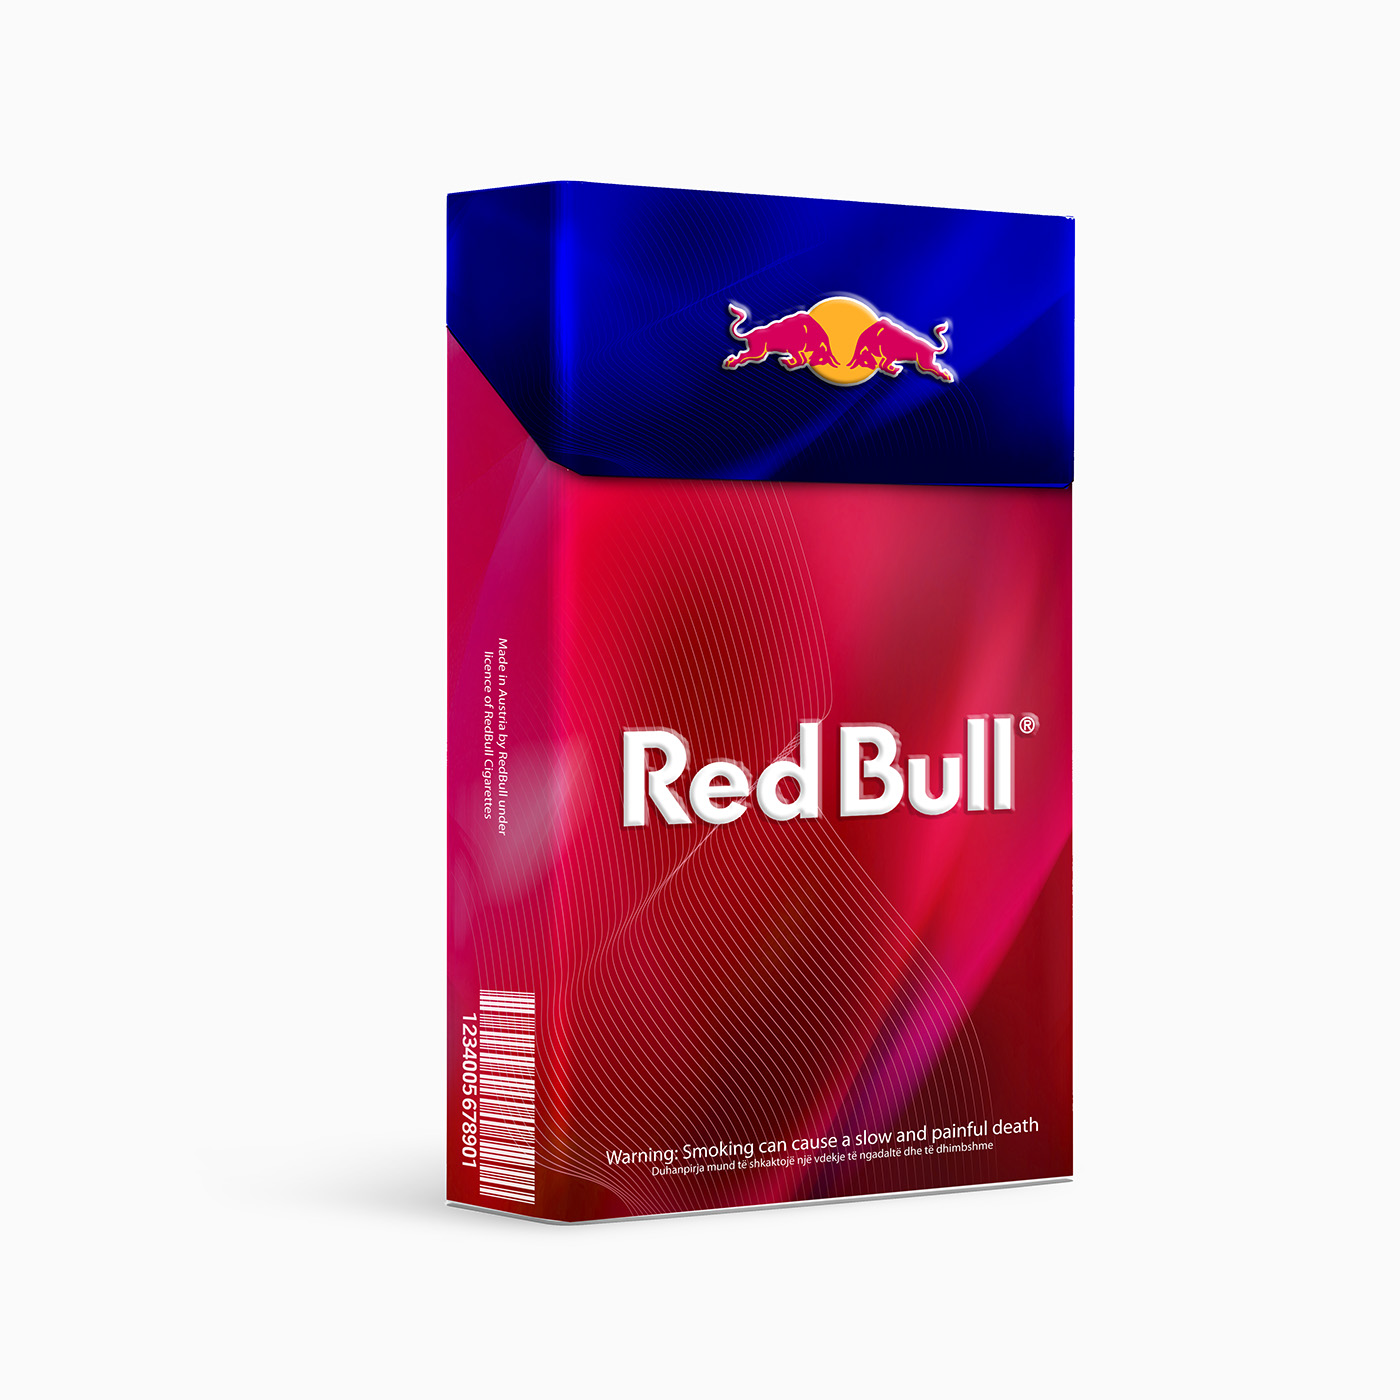 RedBull Red Bull energy drink cigarettes smoke